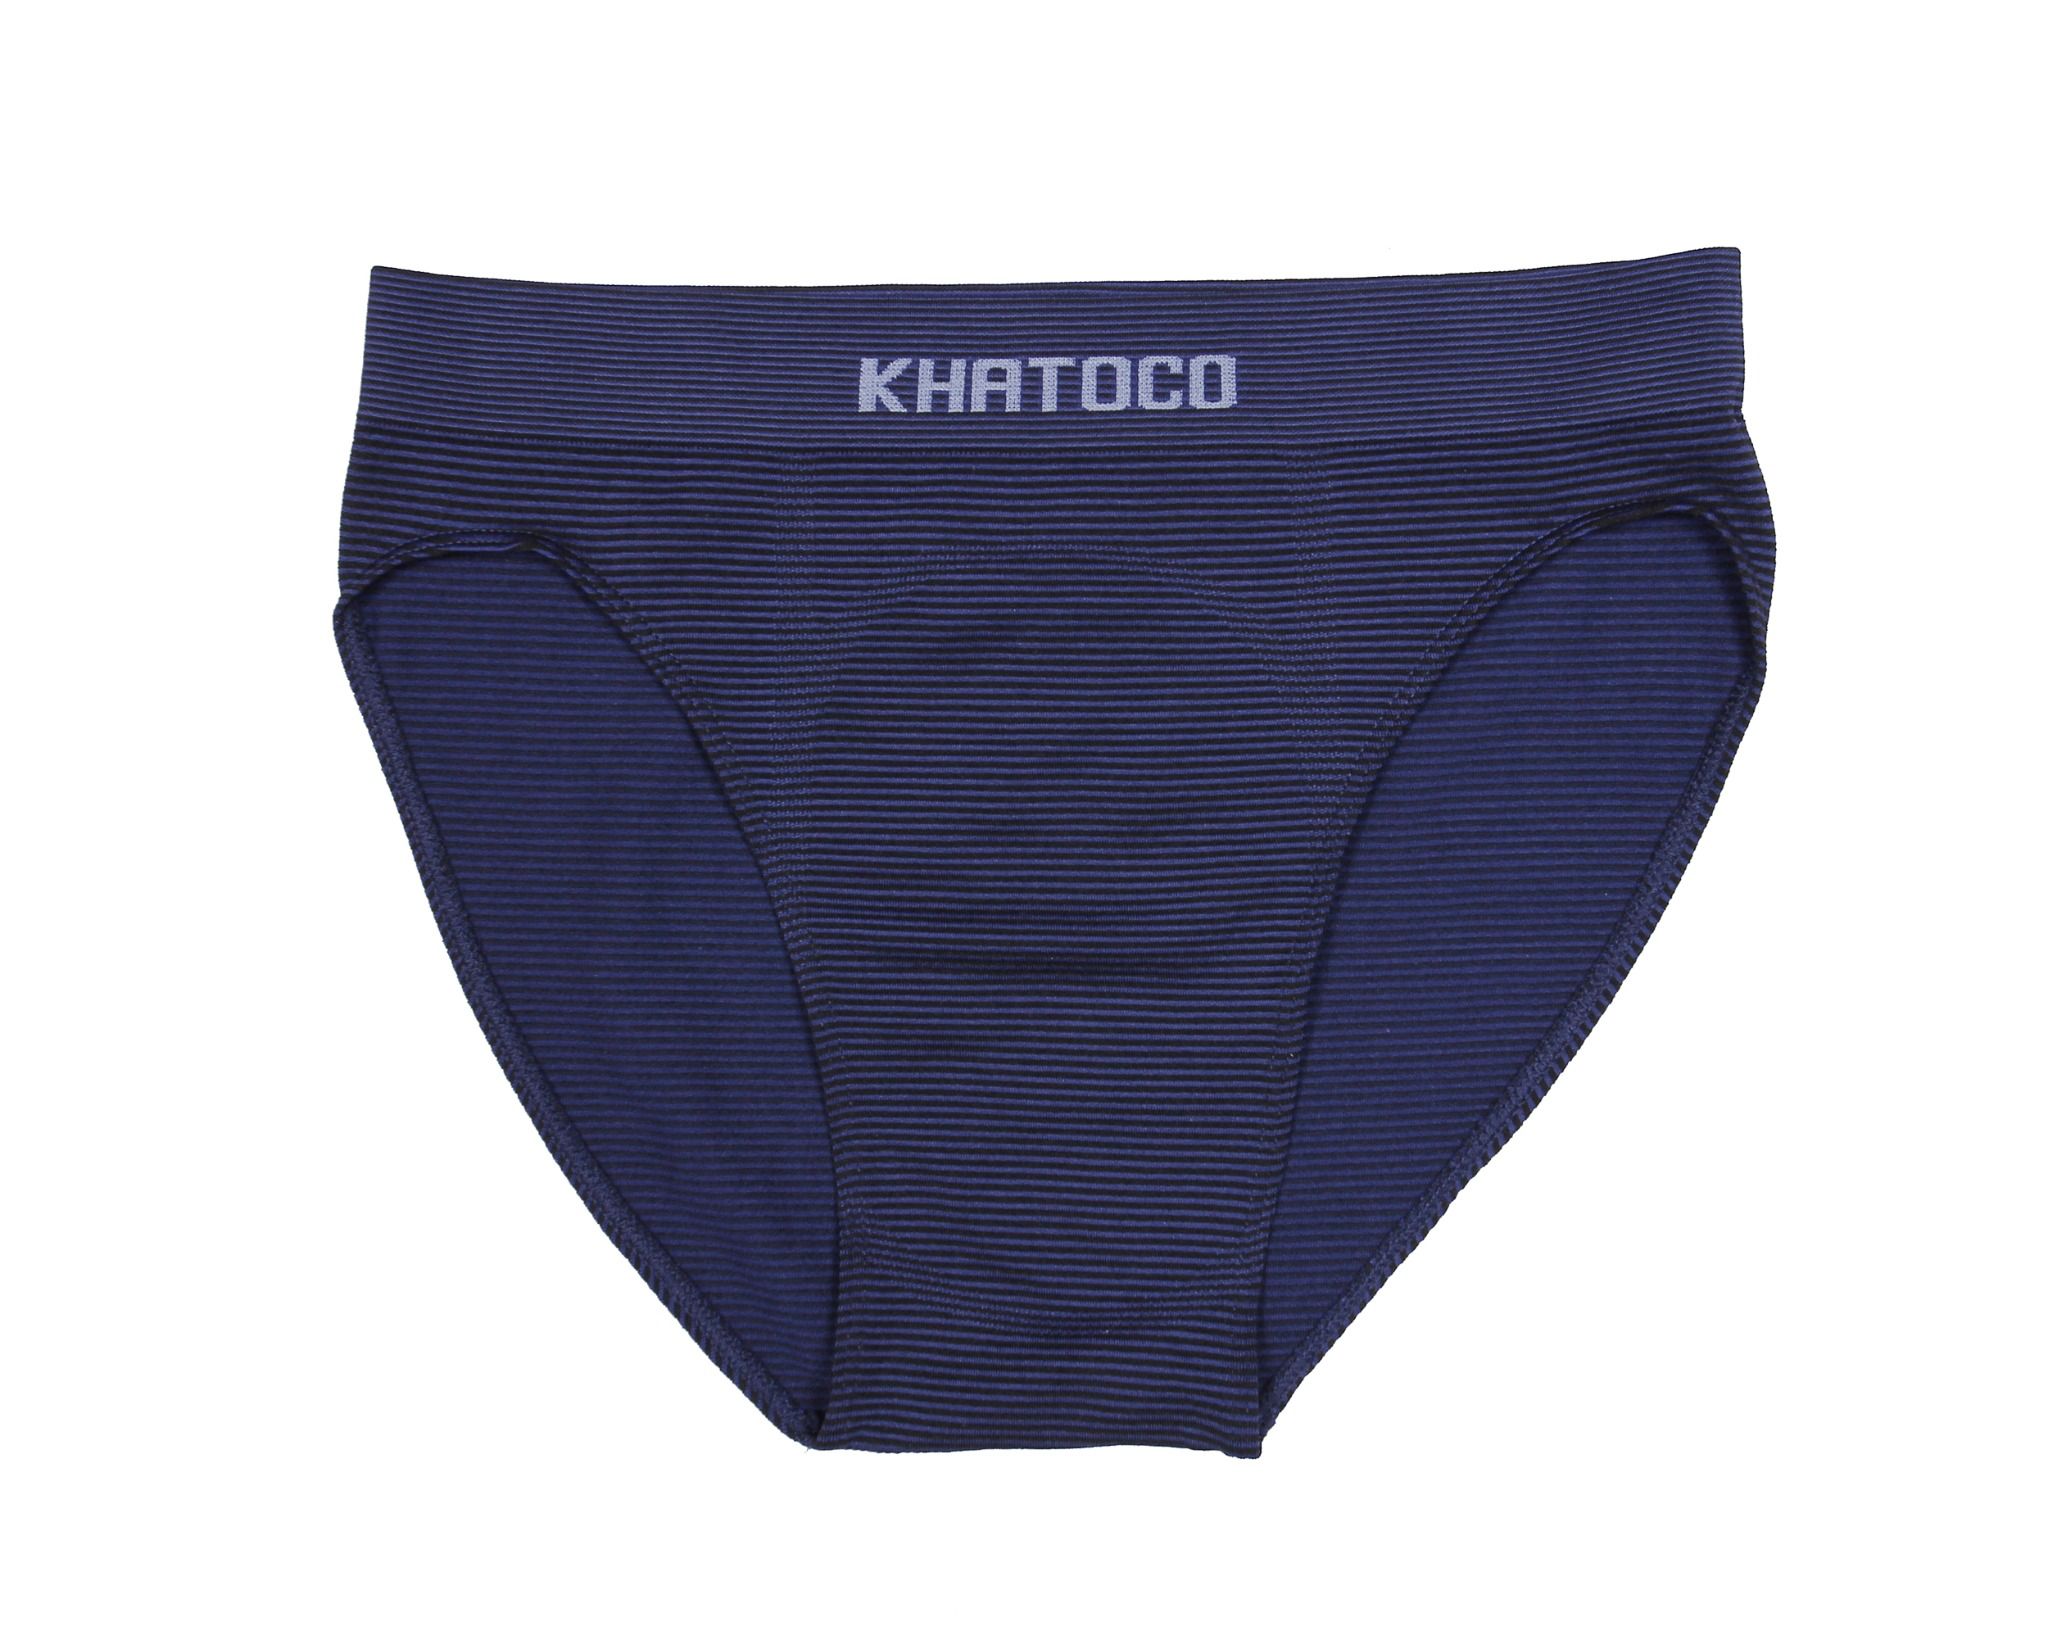  Quần lót nam Khatoco sọc xanh mã Q4M118R0-VNSC001-2411-T 